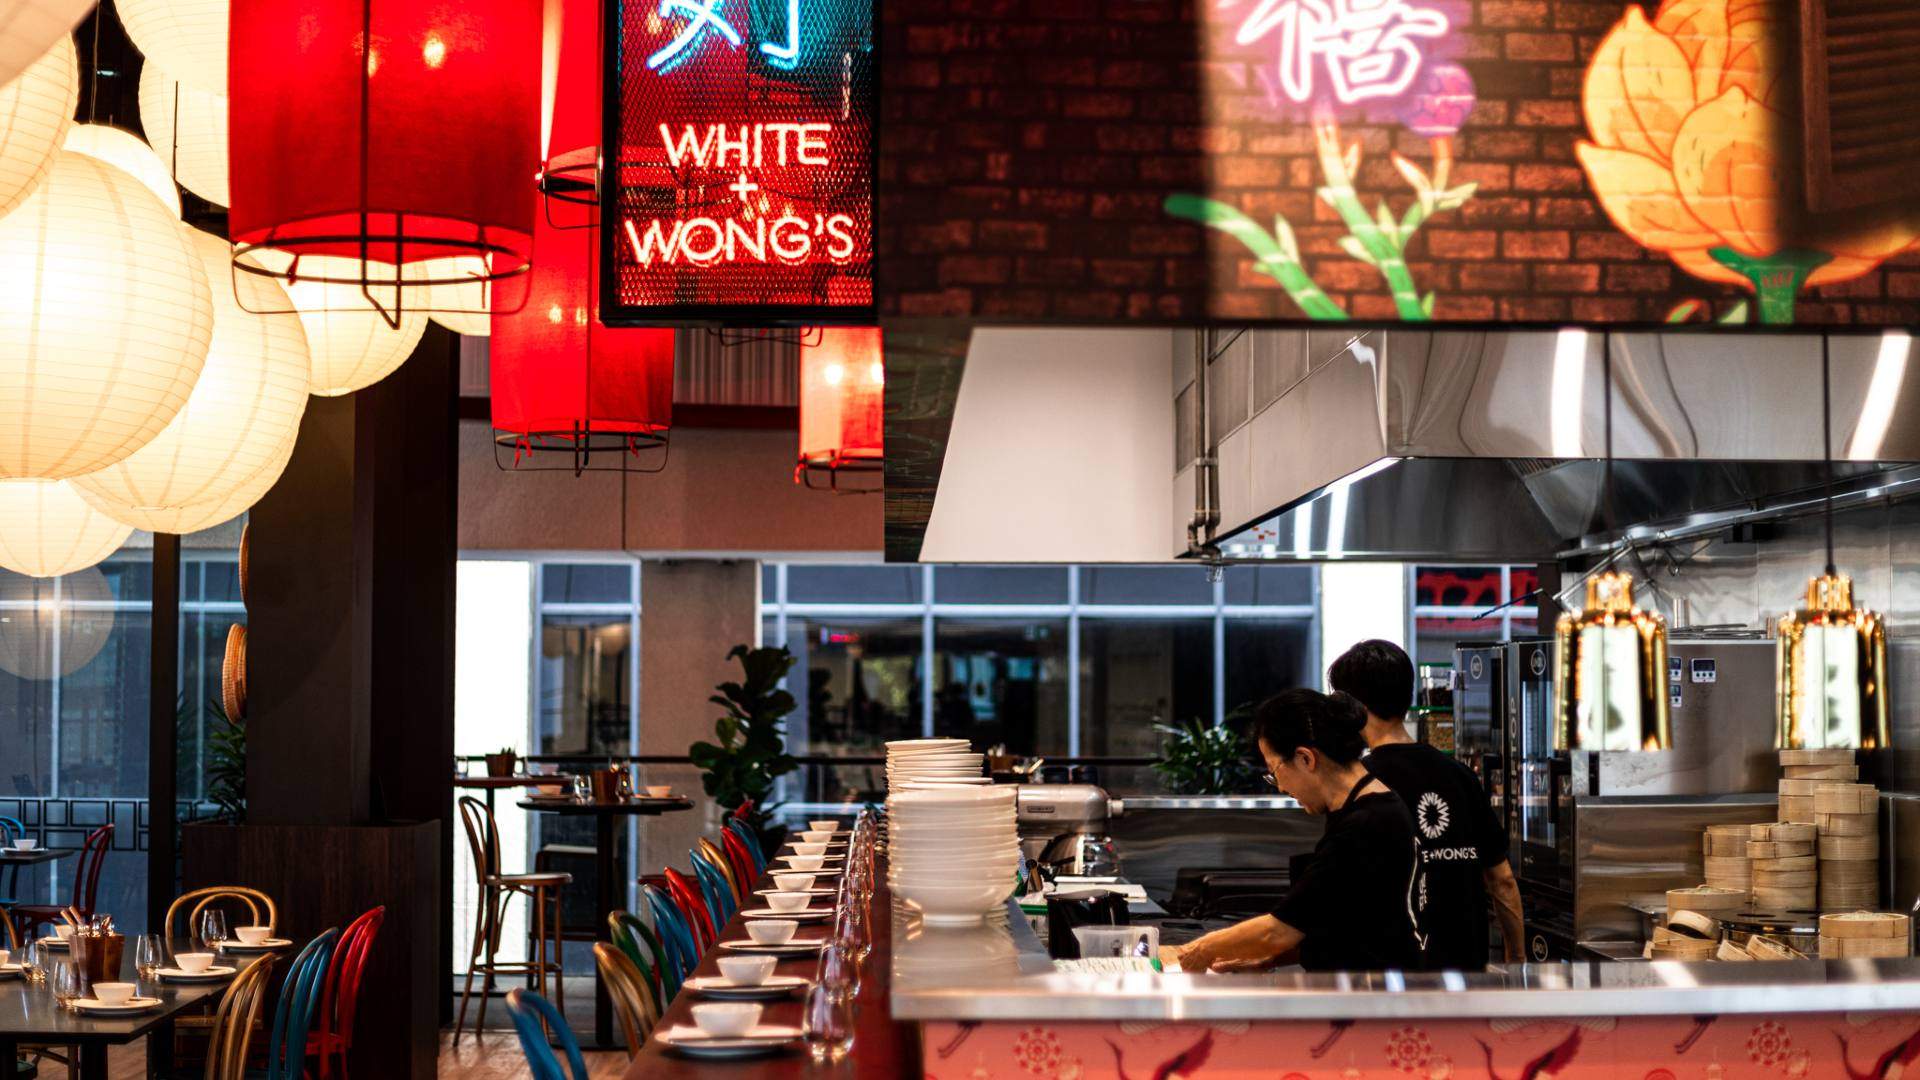 White + Wong's Sydney